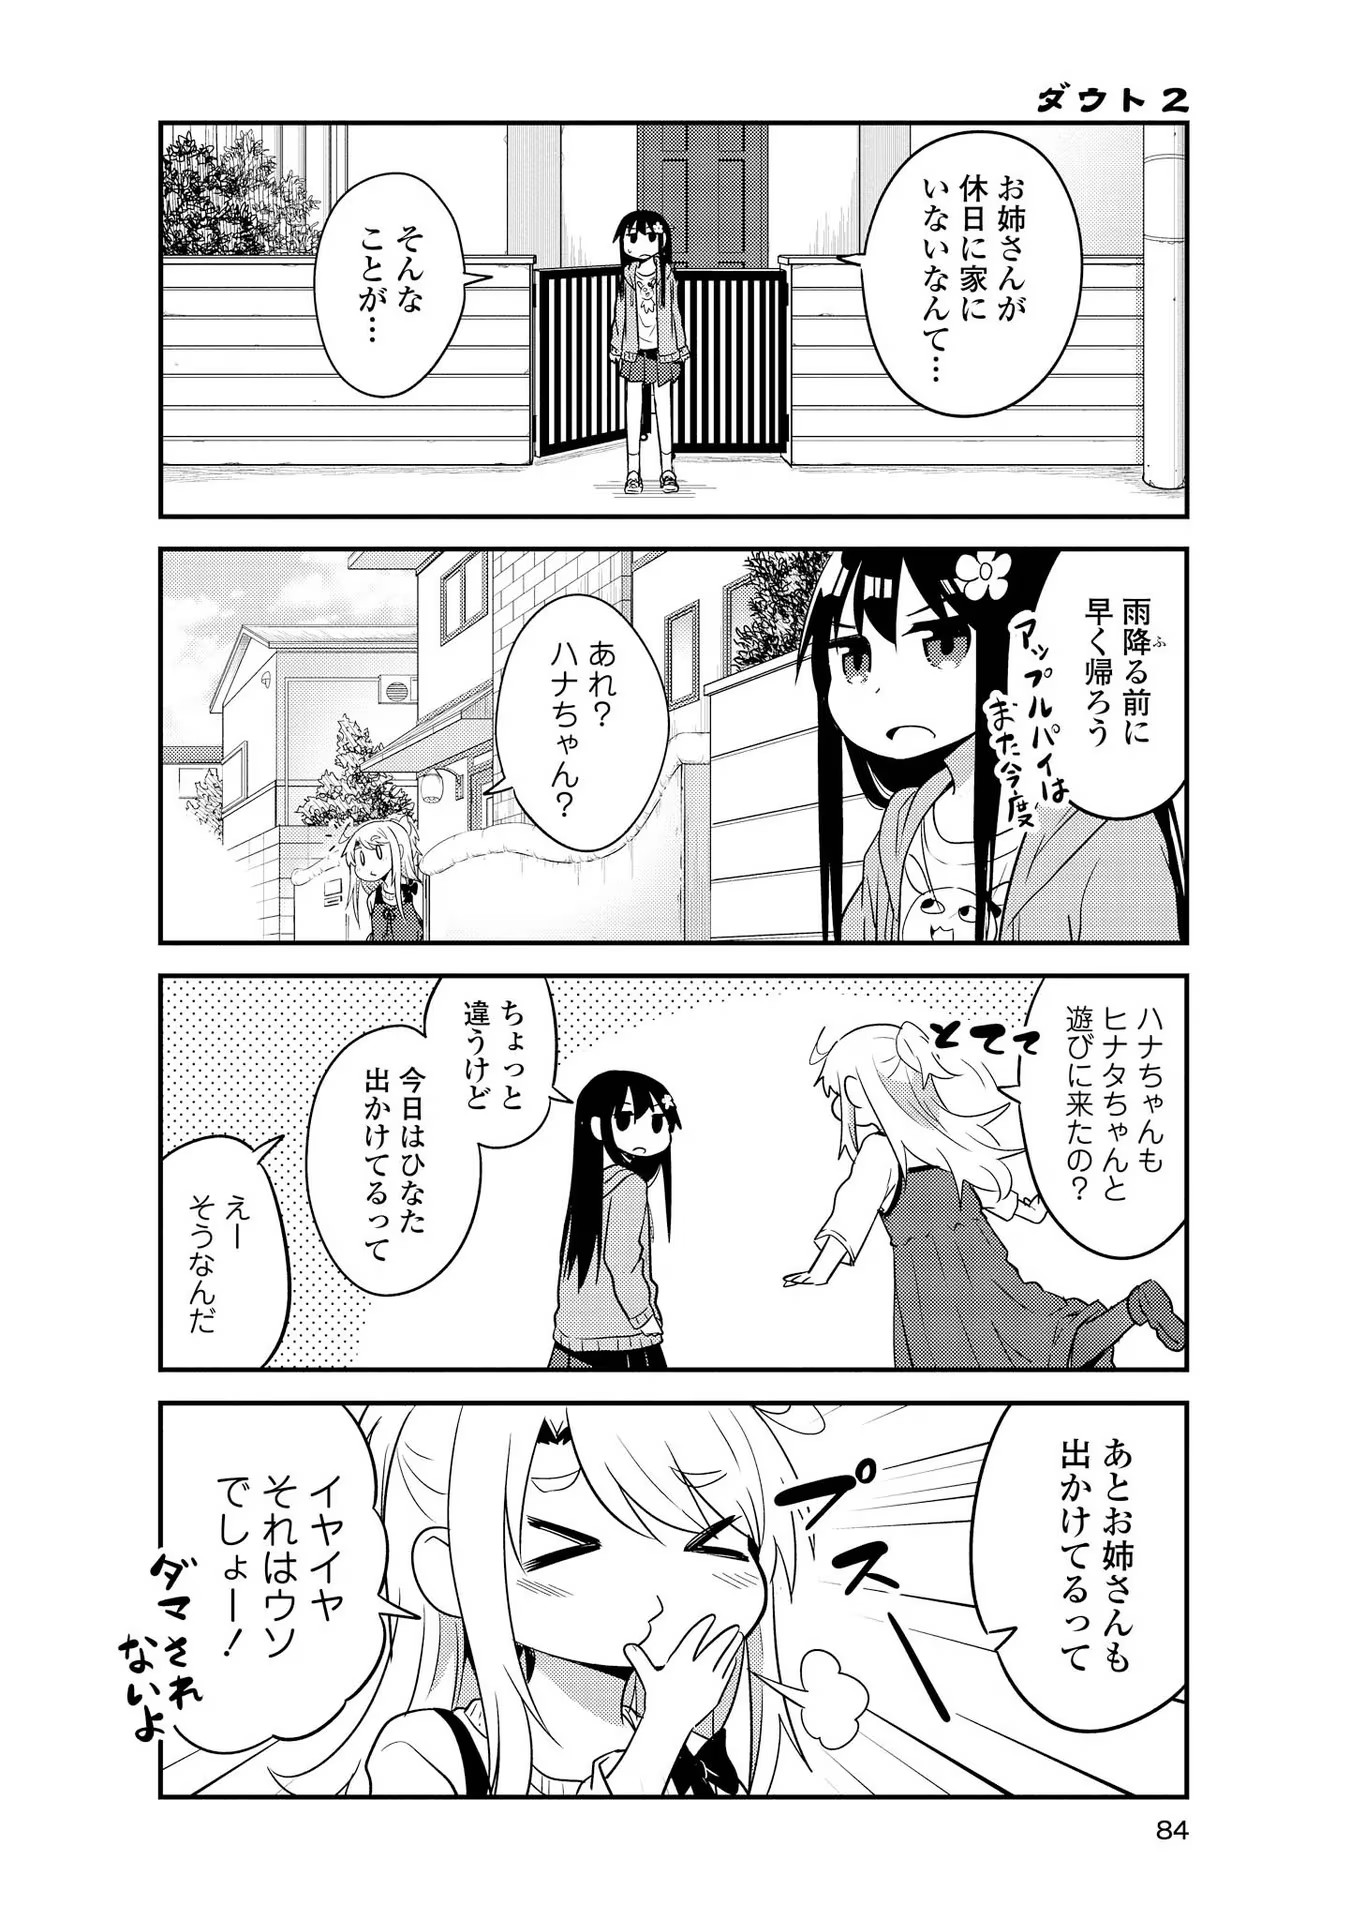 Watashi ni Tenshi ga Maiorita! - Chapter 26 - Page 4